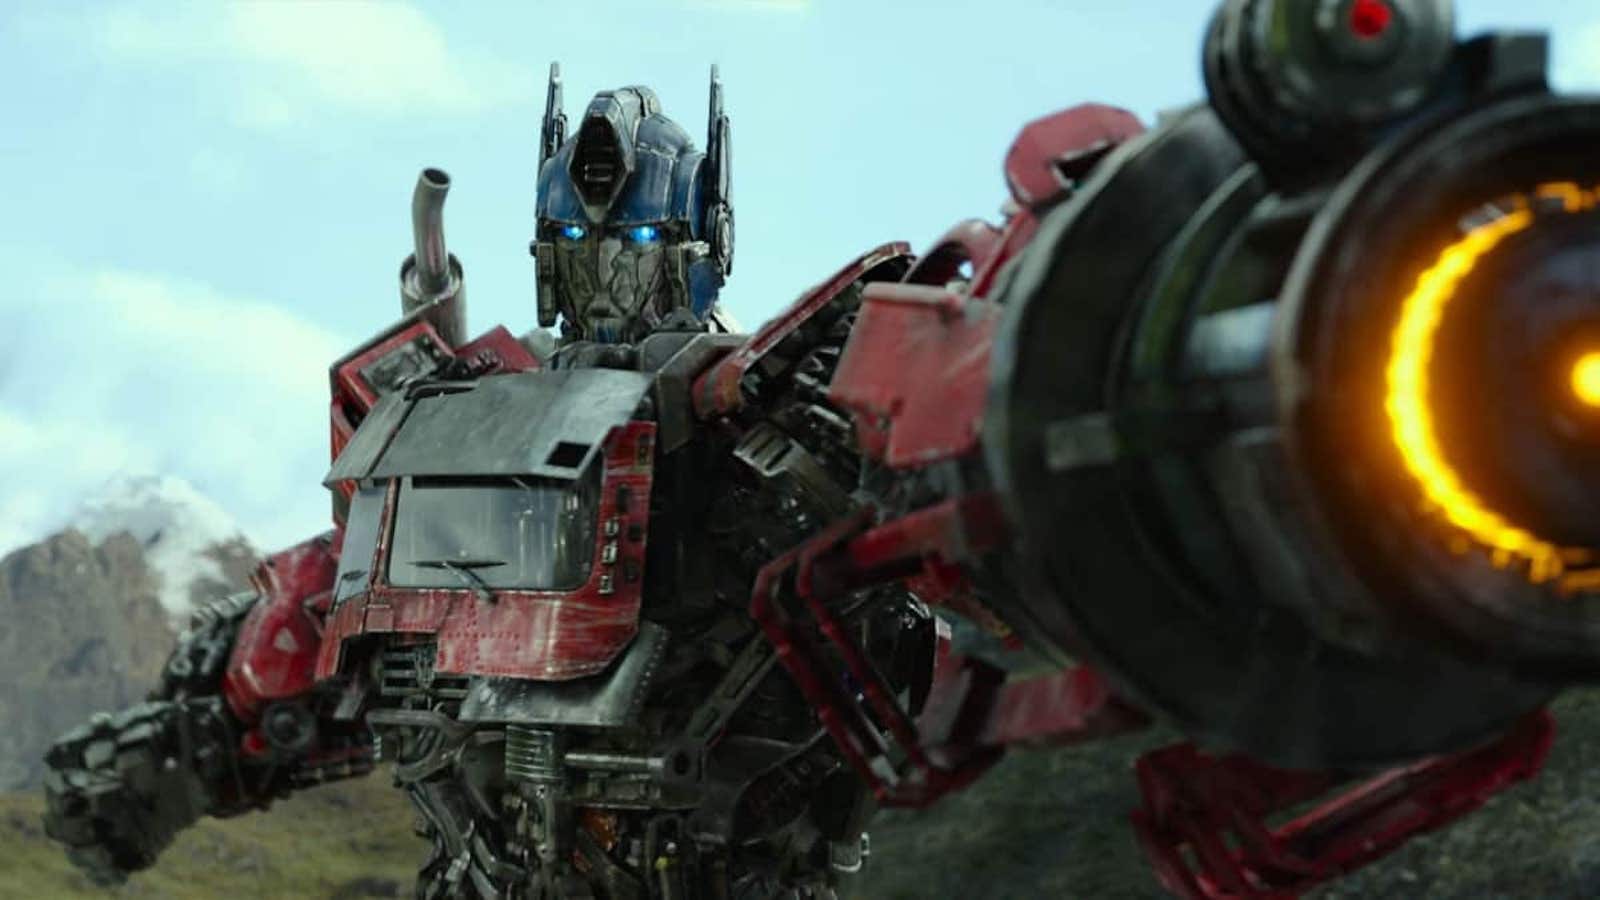 Transformers: Il Risveglio, il regista non ha 'chiesto il permesso' per il crossover con G.I. Joe